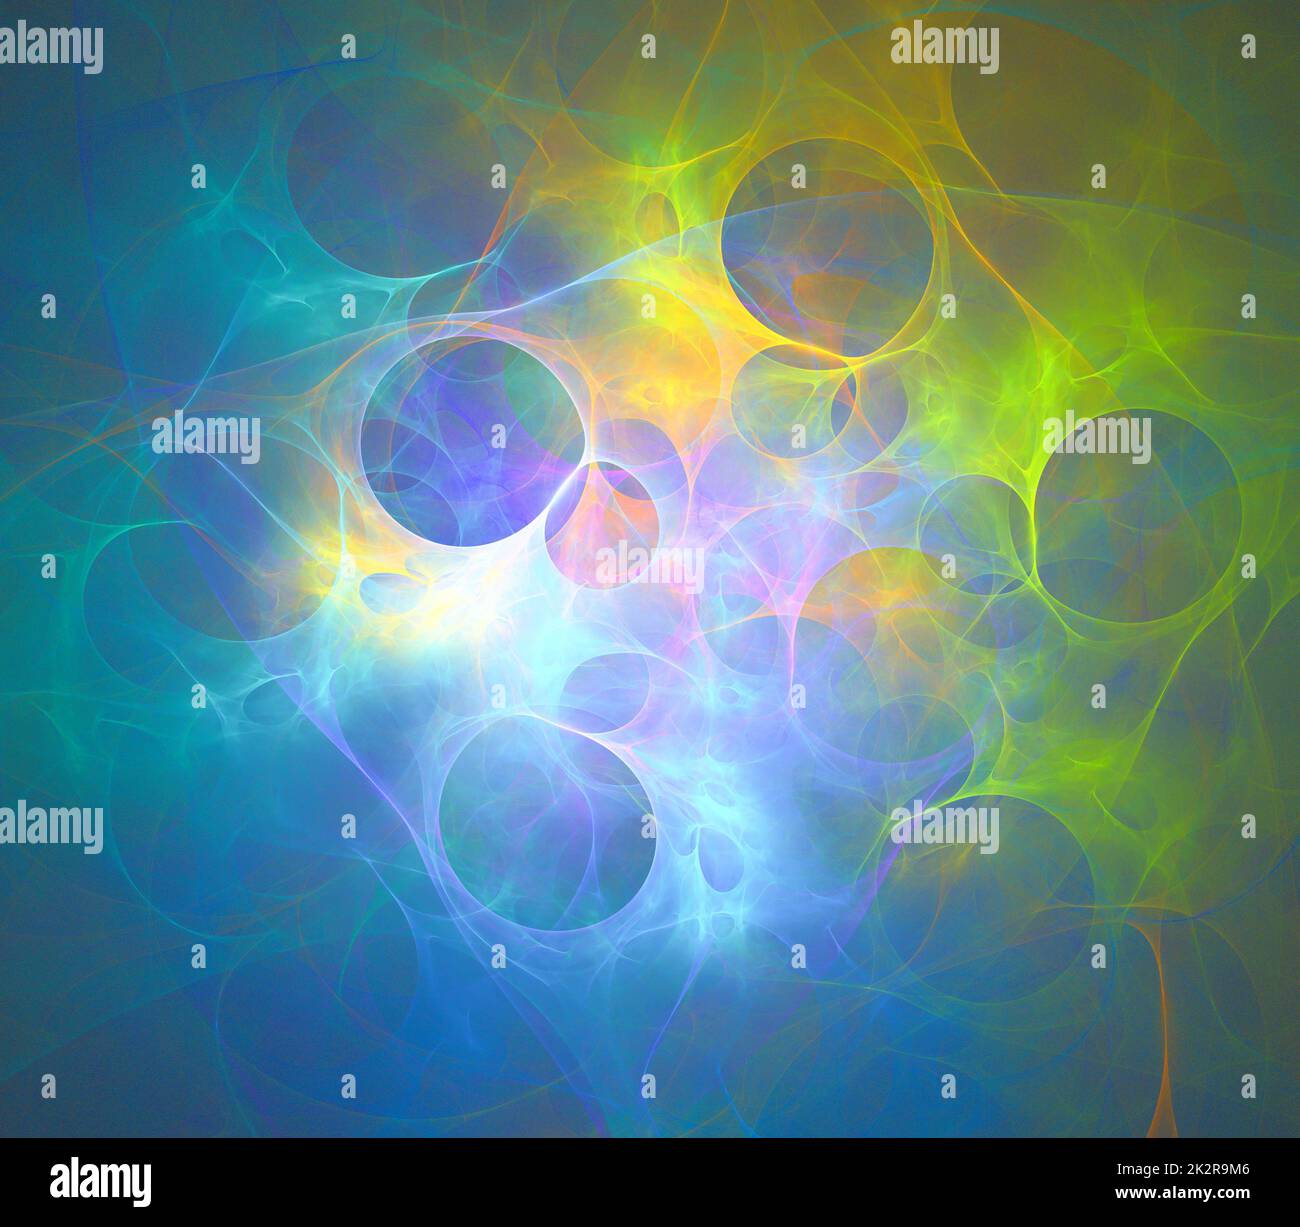 Abstrakter fraktaler Kunsthintergrund, der auf Astronomie und Nebel hindeutet. Computergenerierte Fraktaldarstellung eines Kunstnebels. Stockfoto